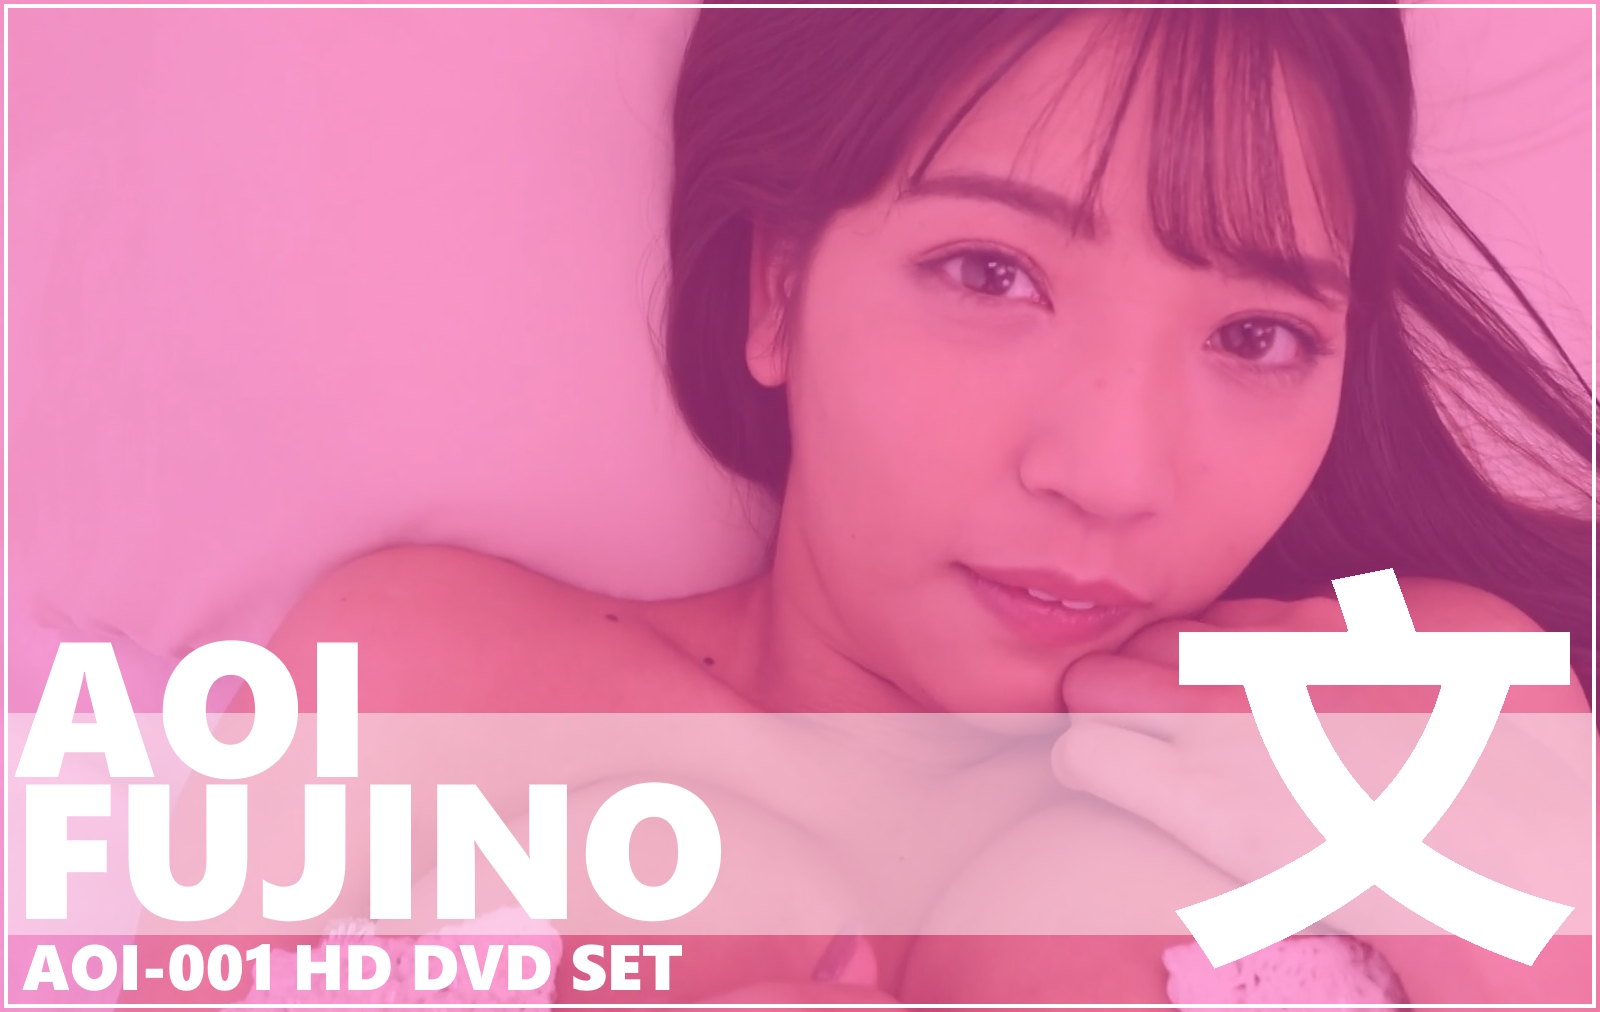 AOI-001 Aoi Fujino HD DVD Set